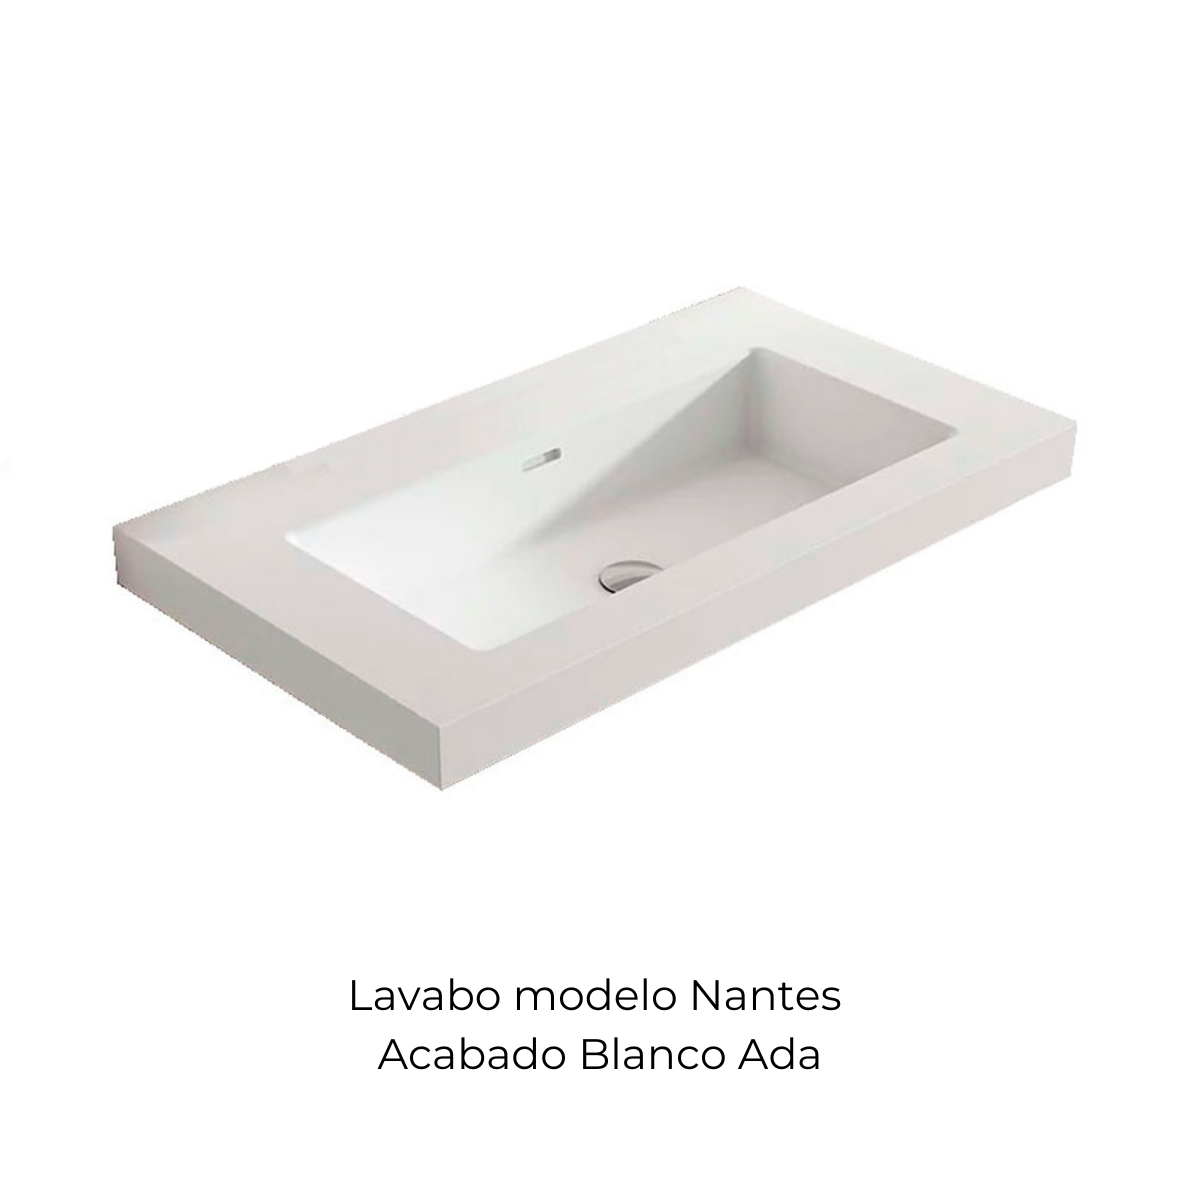 Mueble de baño suspendido de 60 cm con lavabo integrado color Avio Modelo  Granada